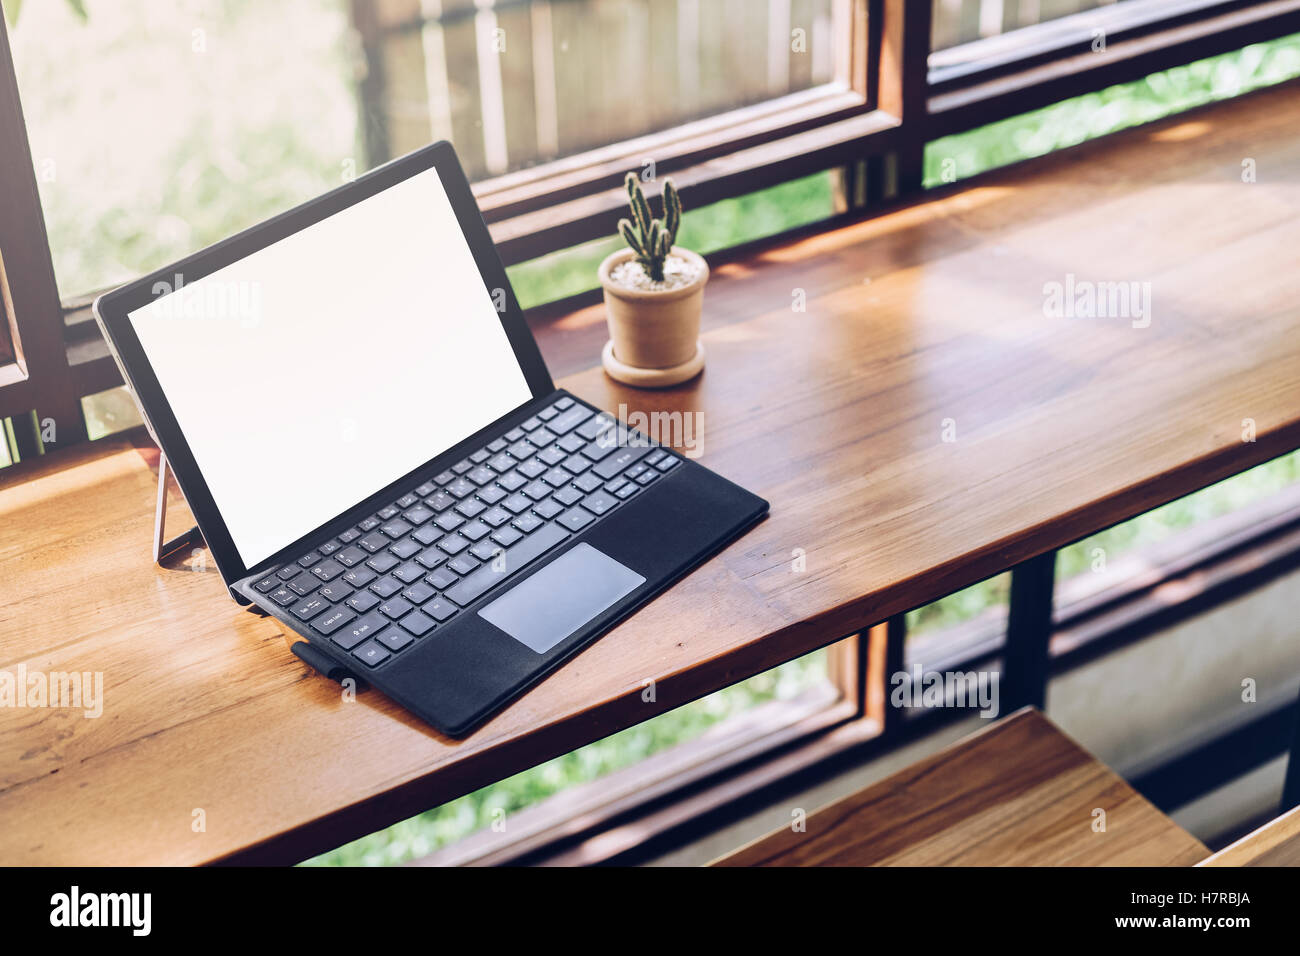 Laptop mit leeren Bildschirm auf Tisch, Mock-up Responsive Design, Corporate Identity mock-up auf Schreibtisch mit Laptop-Computer, Smartphone, c Stockfoto